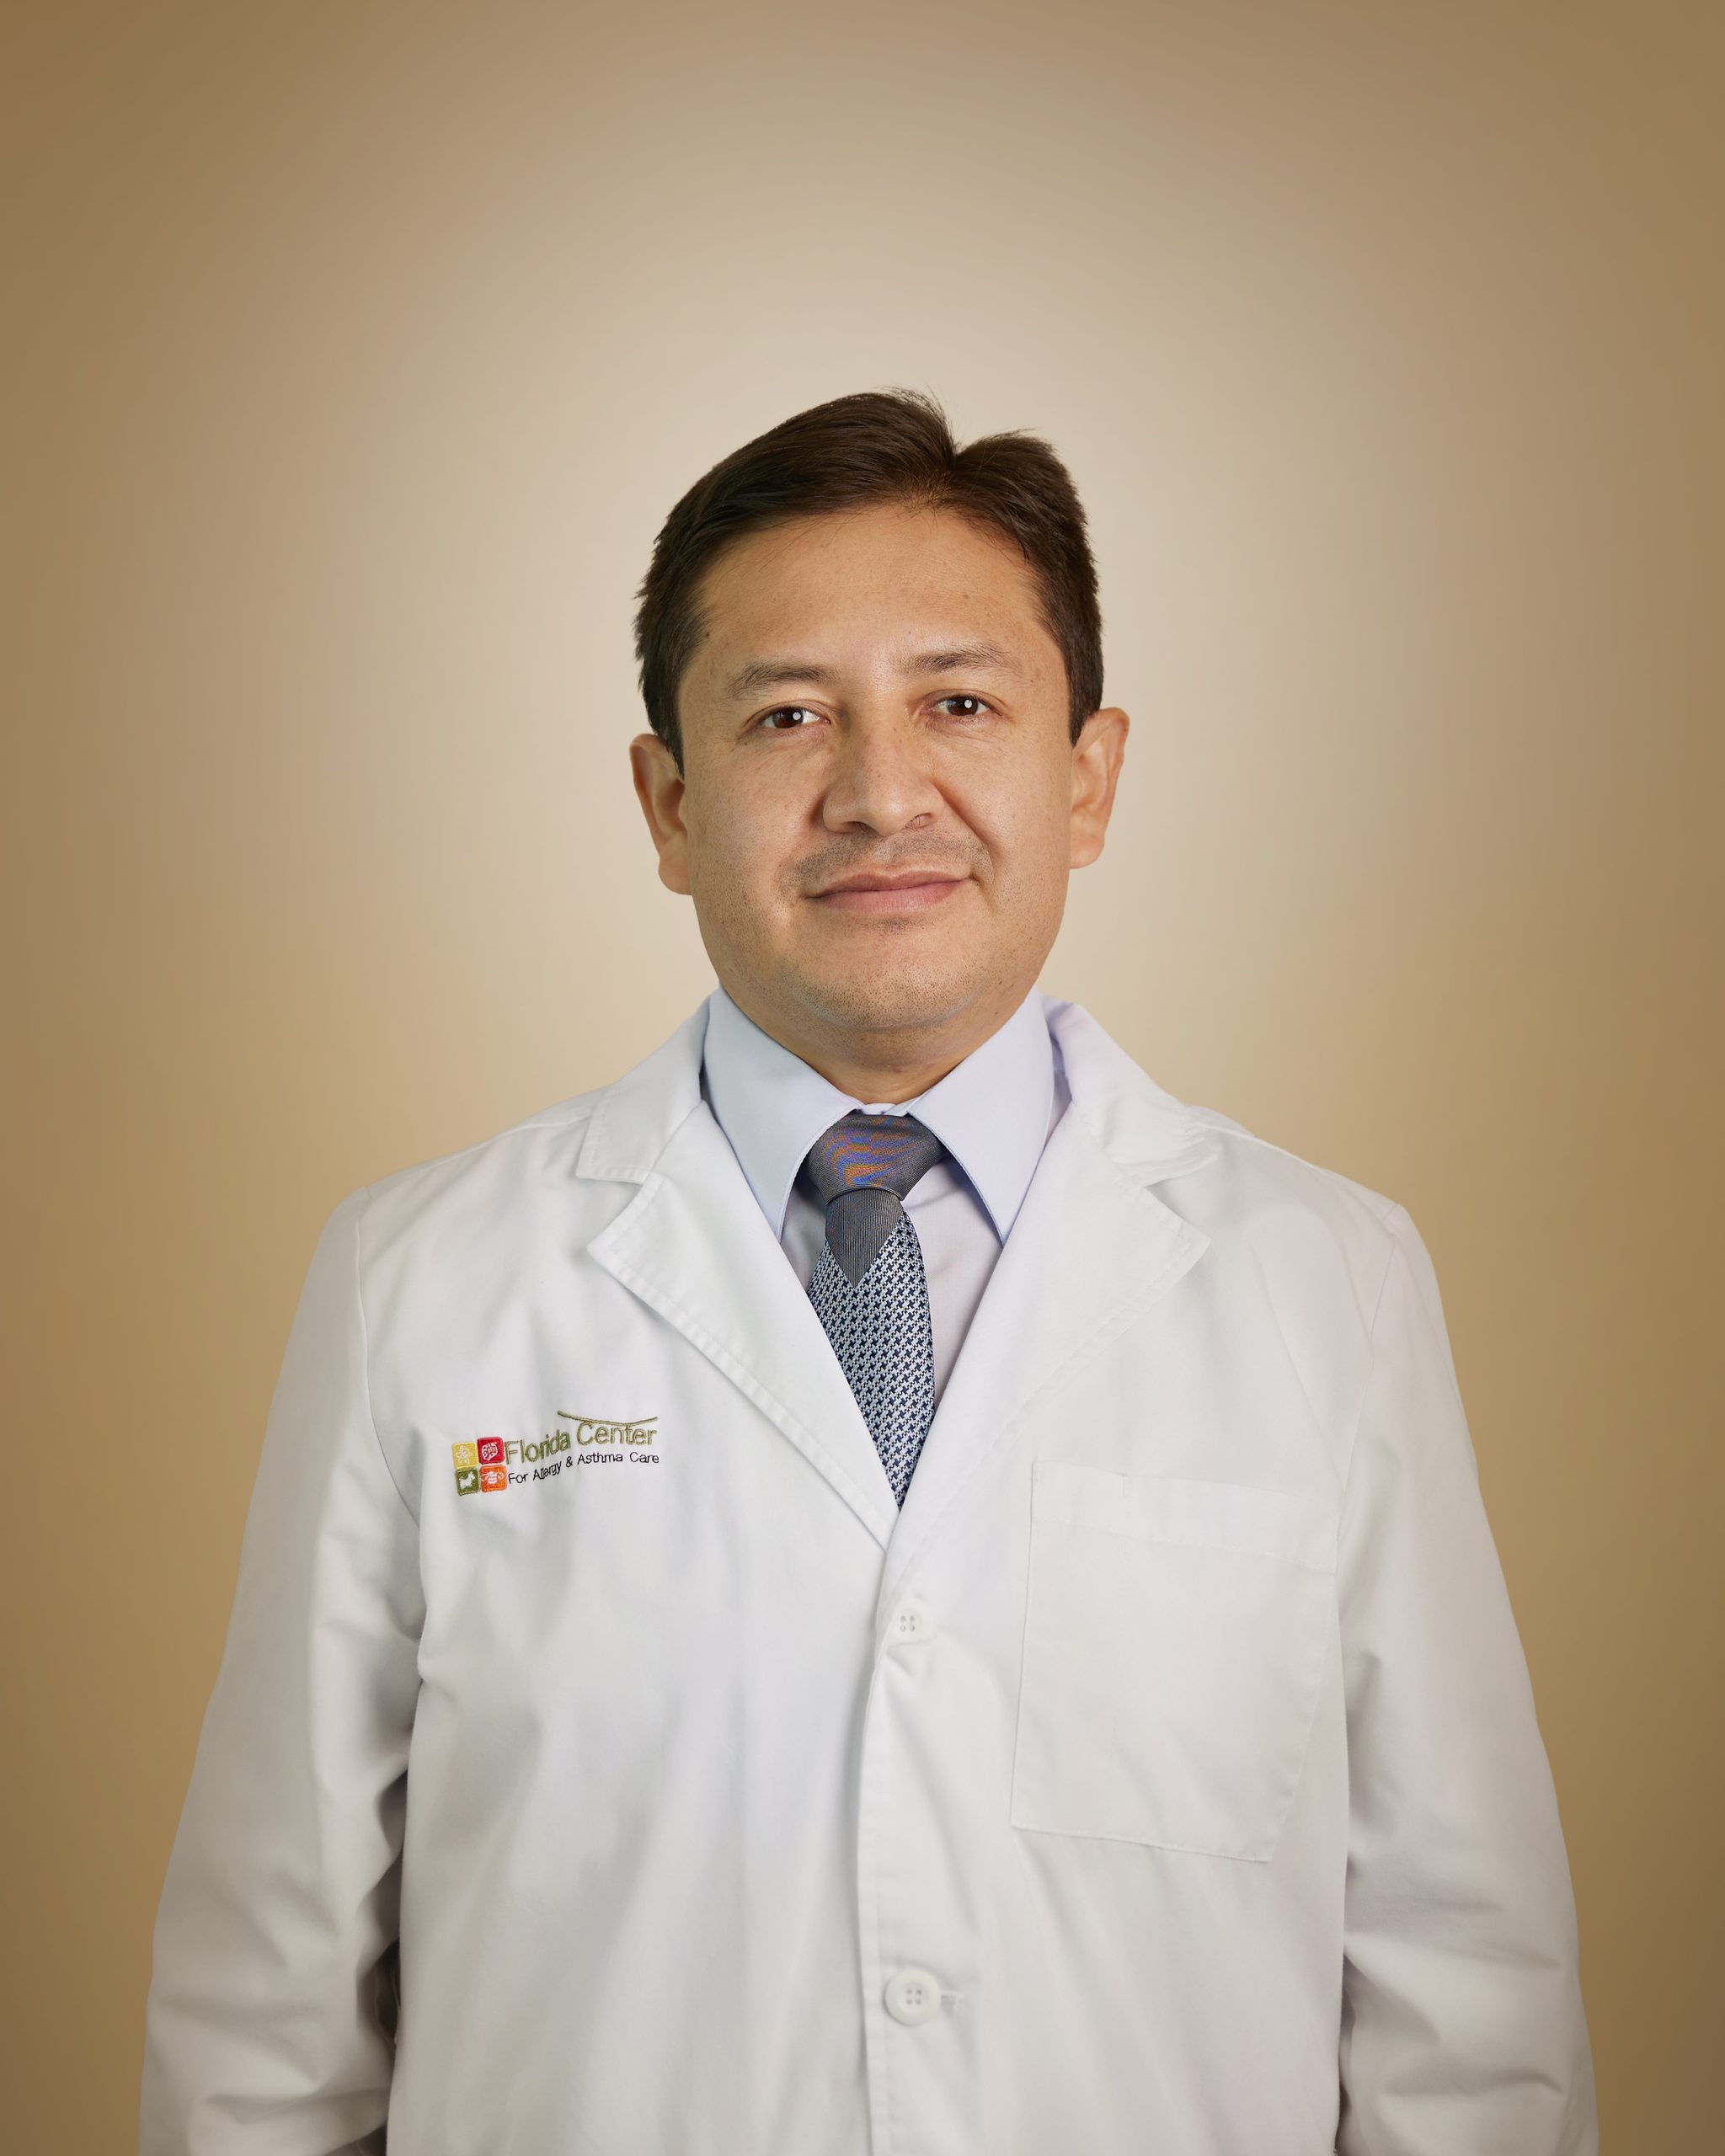 Jose E. Rojas Camayo, MD